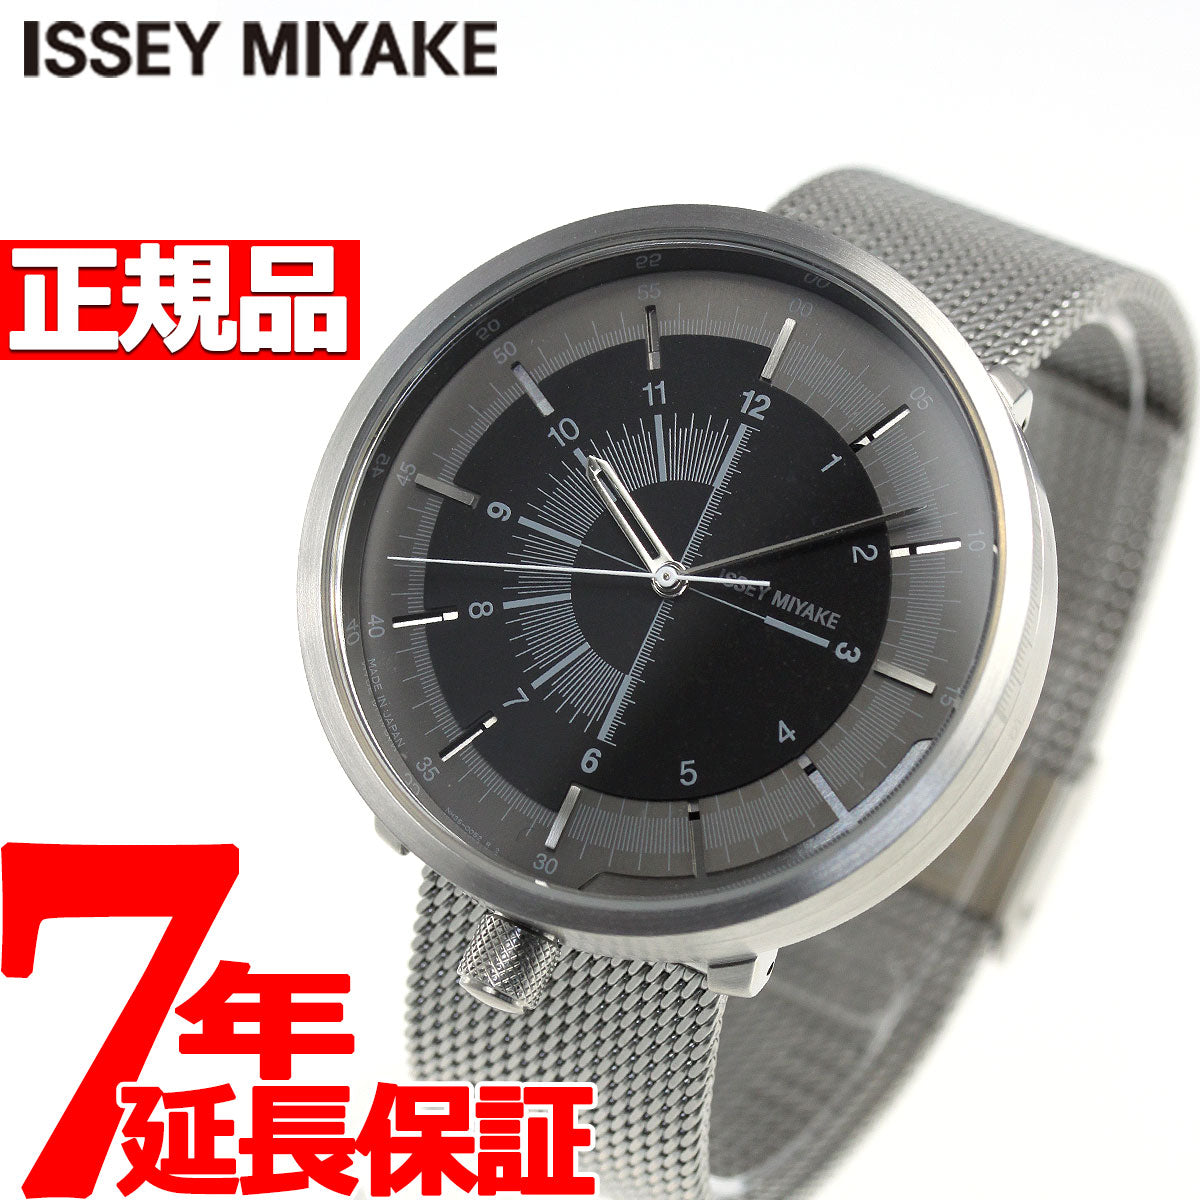 イッセイミヤケ ISSEY MIYAKE 腕時計 メンズ レディース 1/6 ワンシックス 田村奈穂デザイン NYAK002